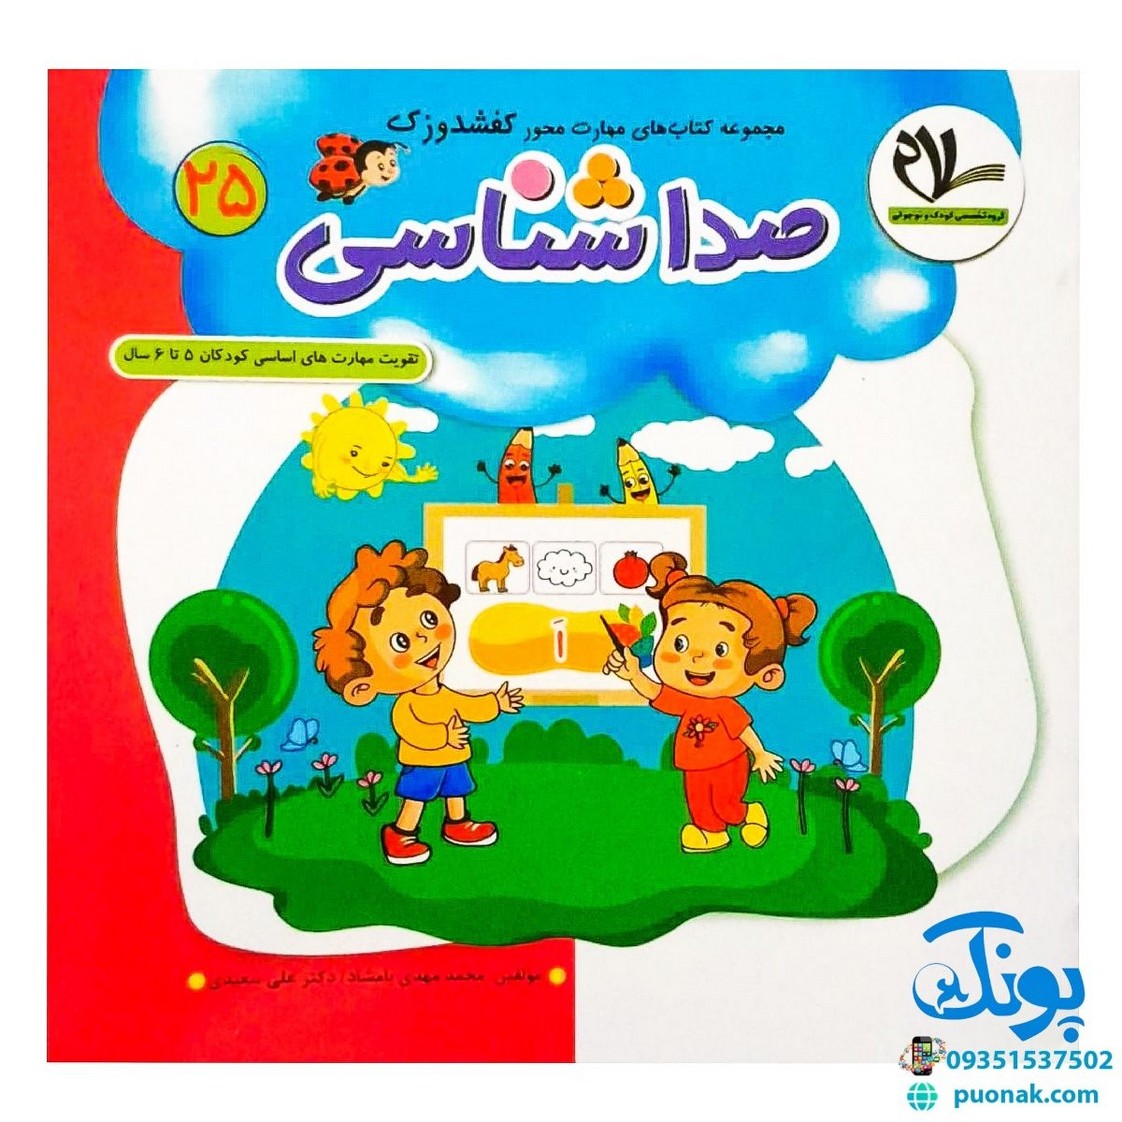 مجموعه کتاب های مهارت محور کفشدوزک جلد بیست و پنجم ۲۵ (صداشناسی) تقویت مهارت های اساسی کودکان ۵ تا ۶ سال